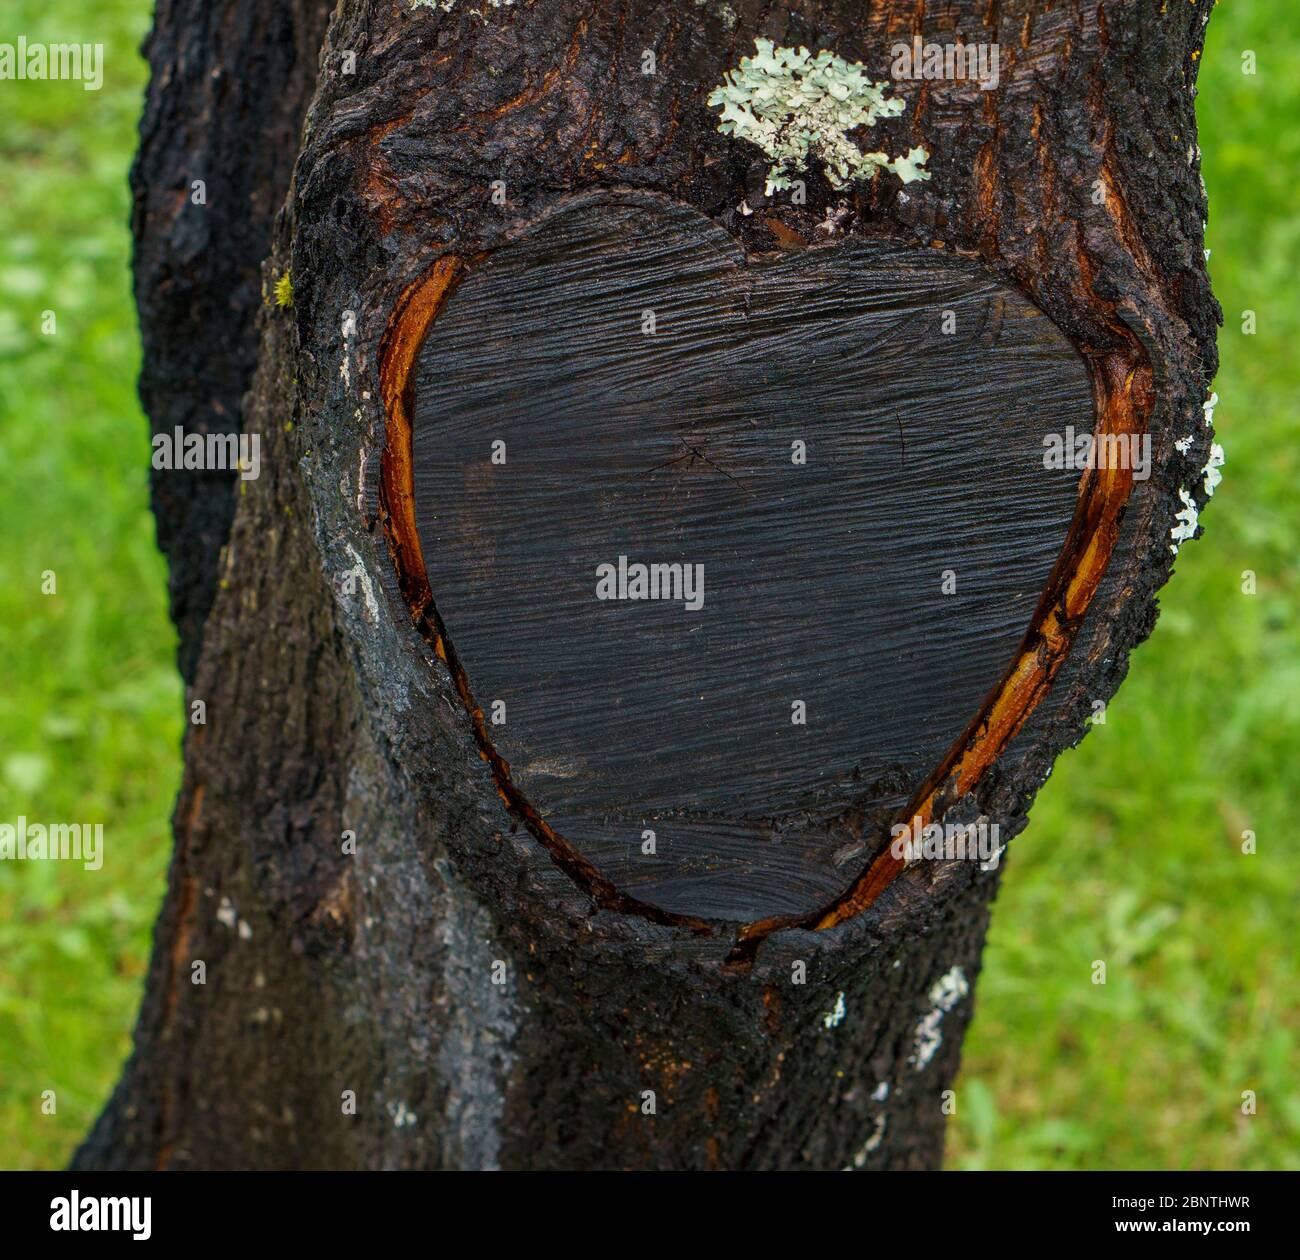 Marque noire en forme de coeur sur le tronc de l'arbre après retrait de la branche Banque D'Images